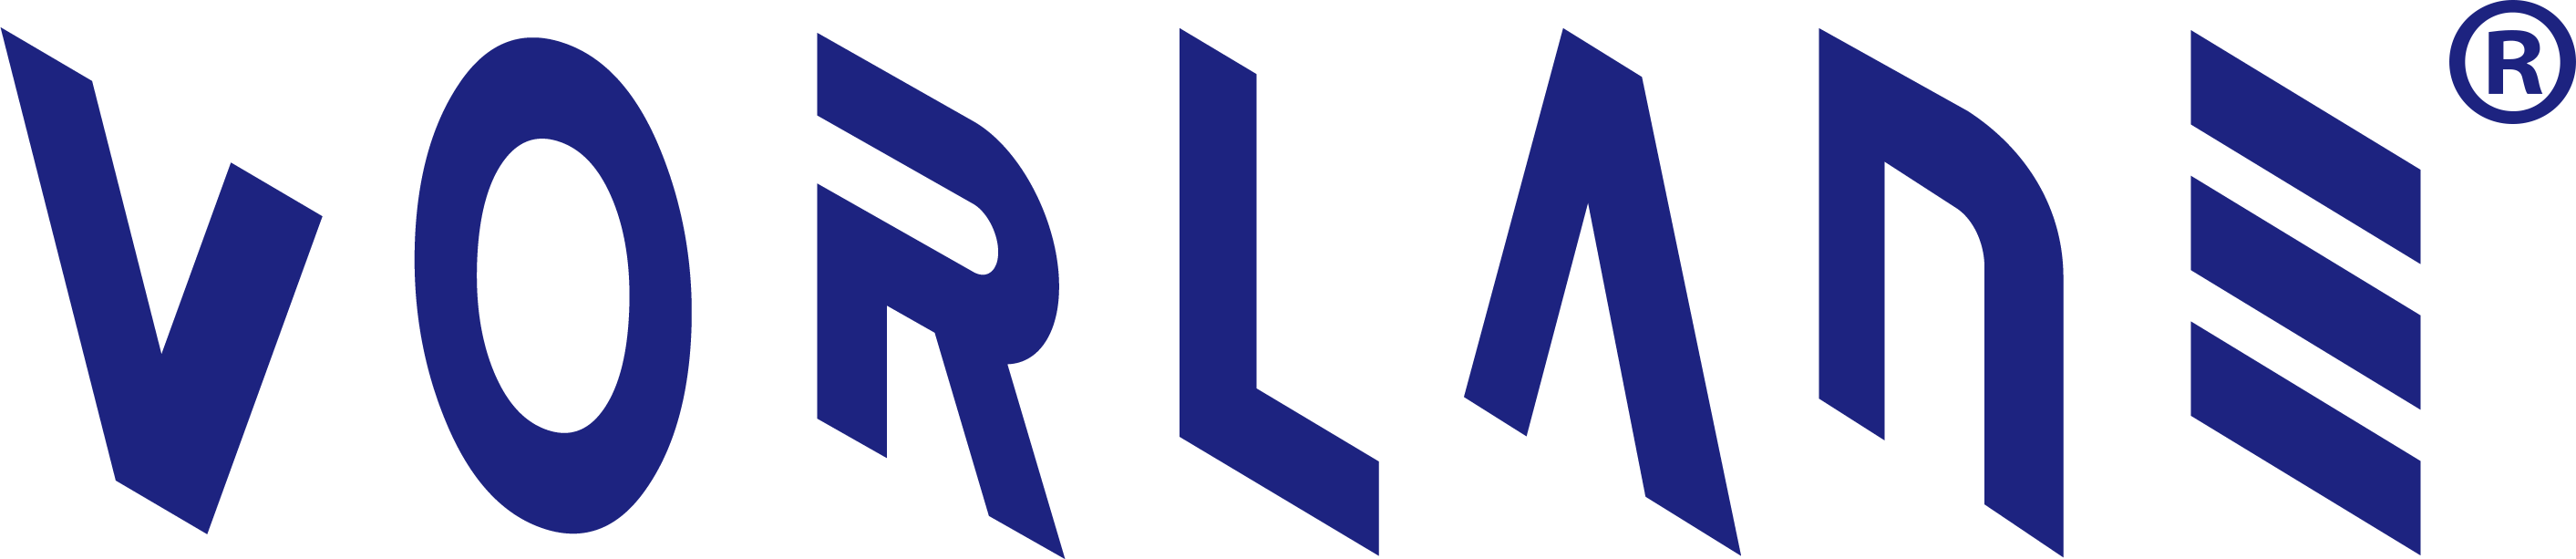 логотип ворлейна р